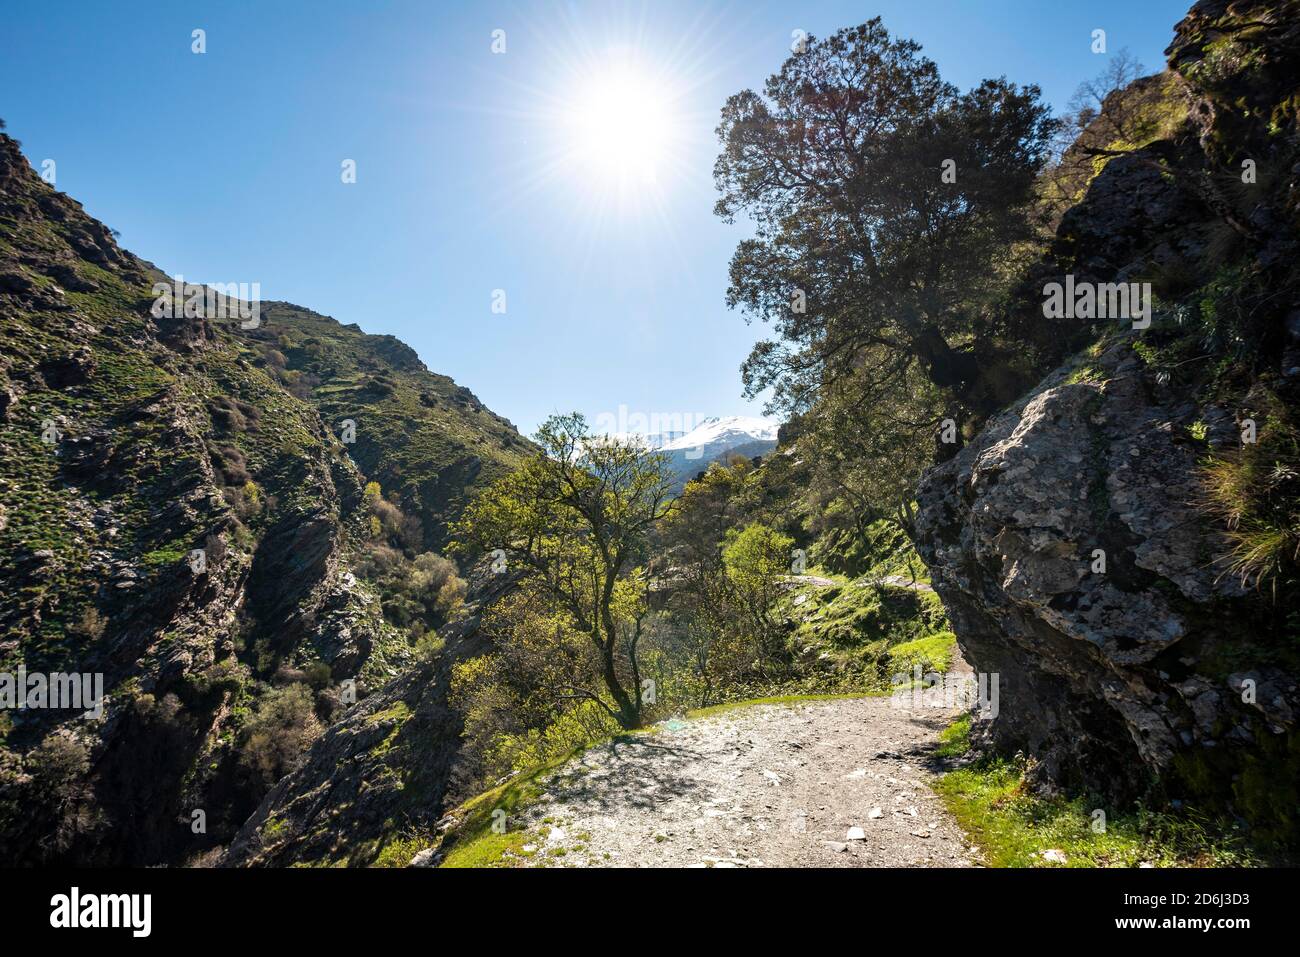 Hiking trail Vereda de la Estrella, Sierra Nevada, mountains near Granada, Andalusia, Spain Stock Photo